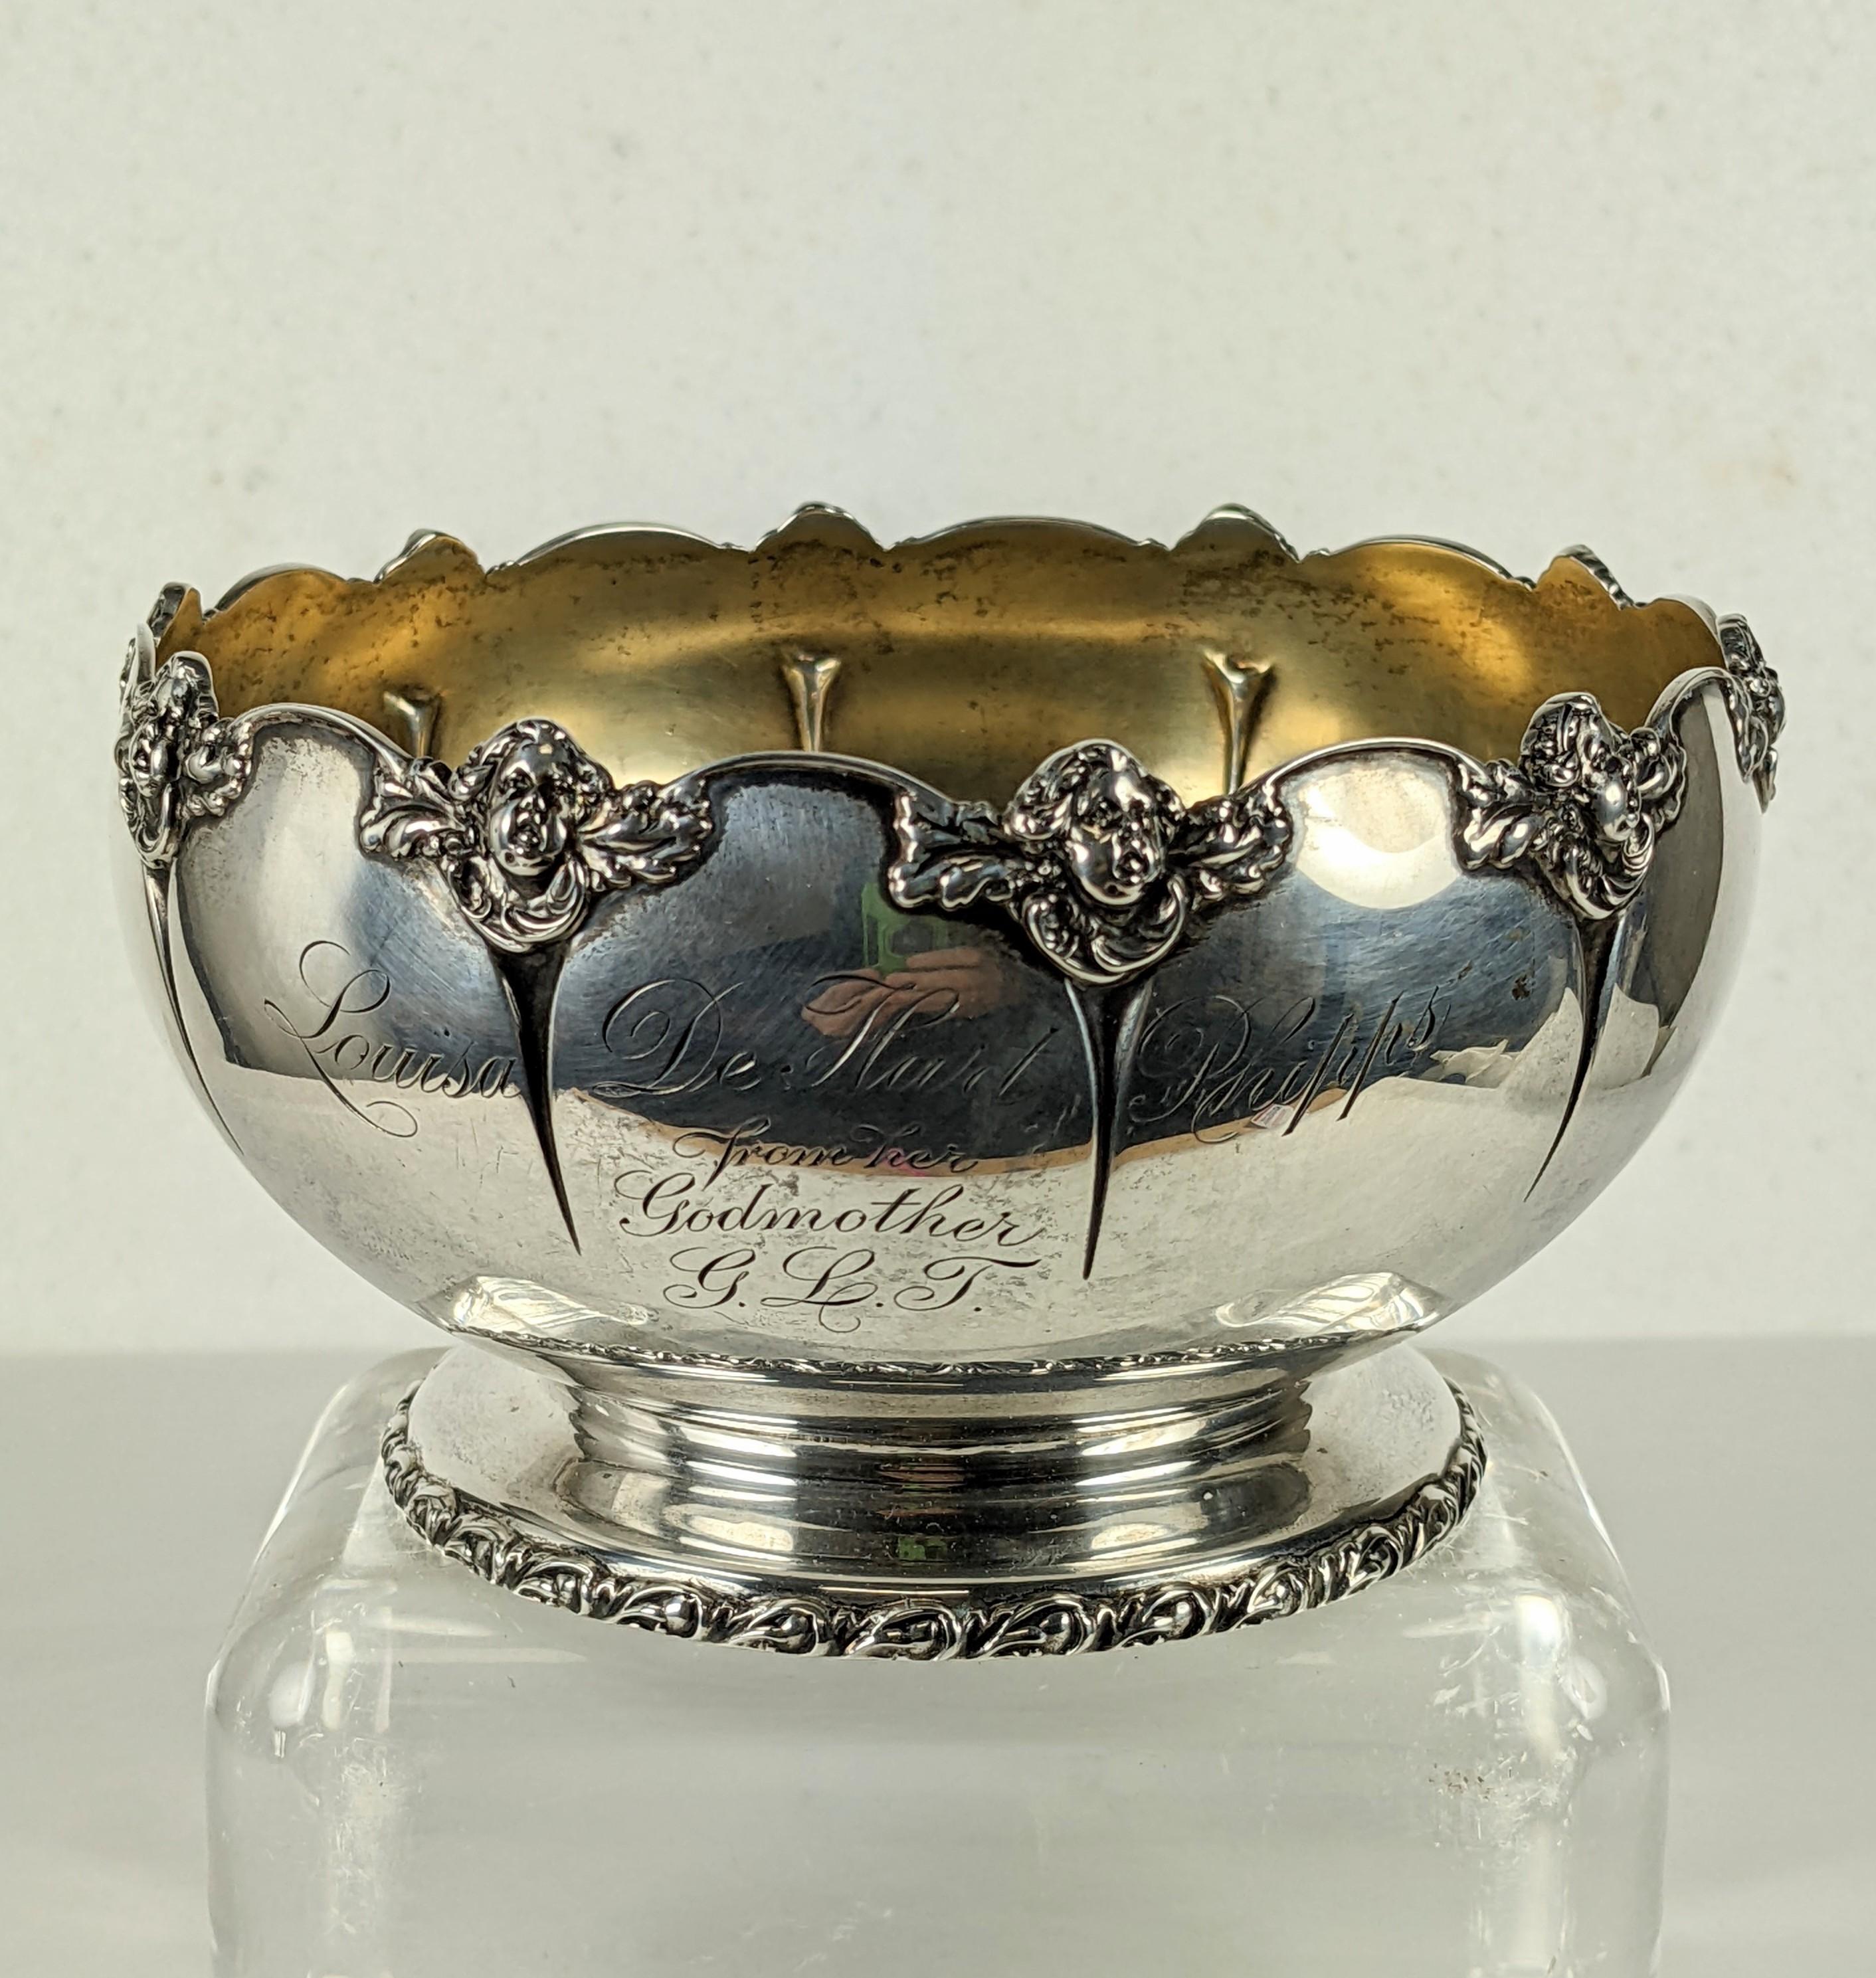 Charmant bol orné d'un ange, fabriqué par Gorham Manufacturing Co. dans les années 1870-80, parfait pour les bonbons ou les pots pourris. 
Ce bol a été inscrit au nom de Louisa De Hart Phipps, qui résidait au Mo et est décédée à seulement 33 ans en